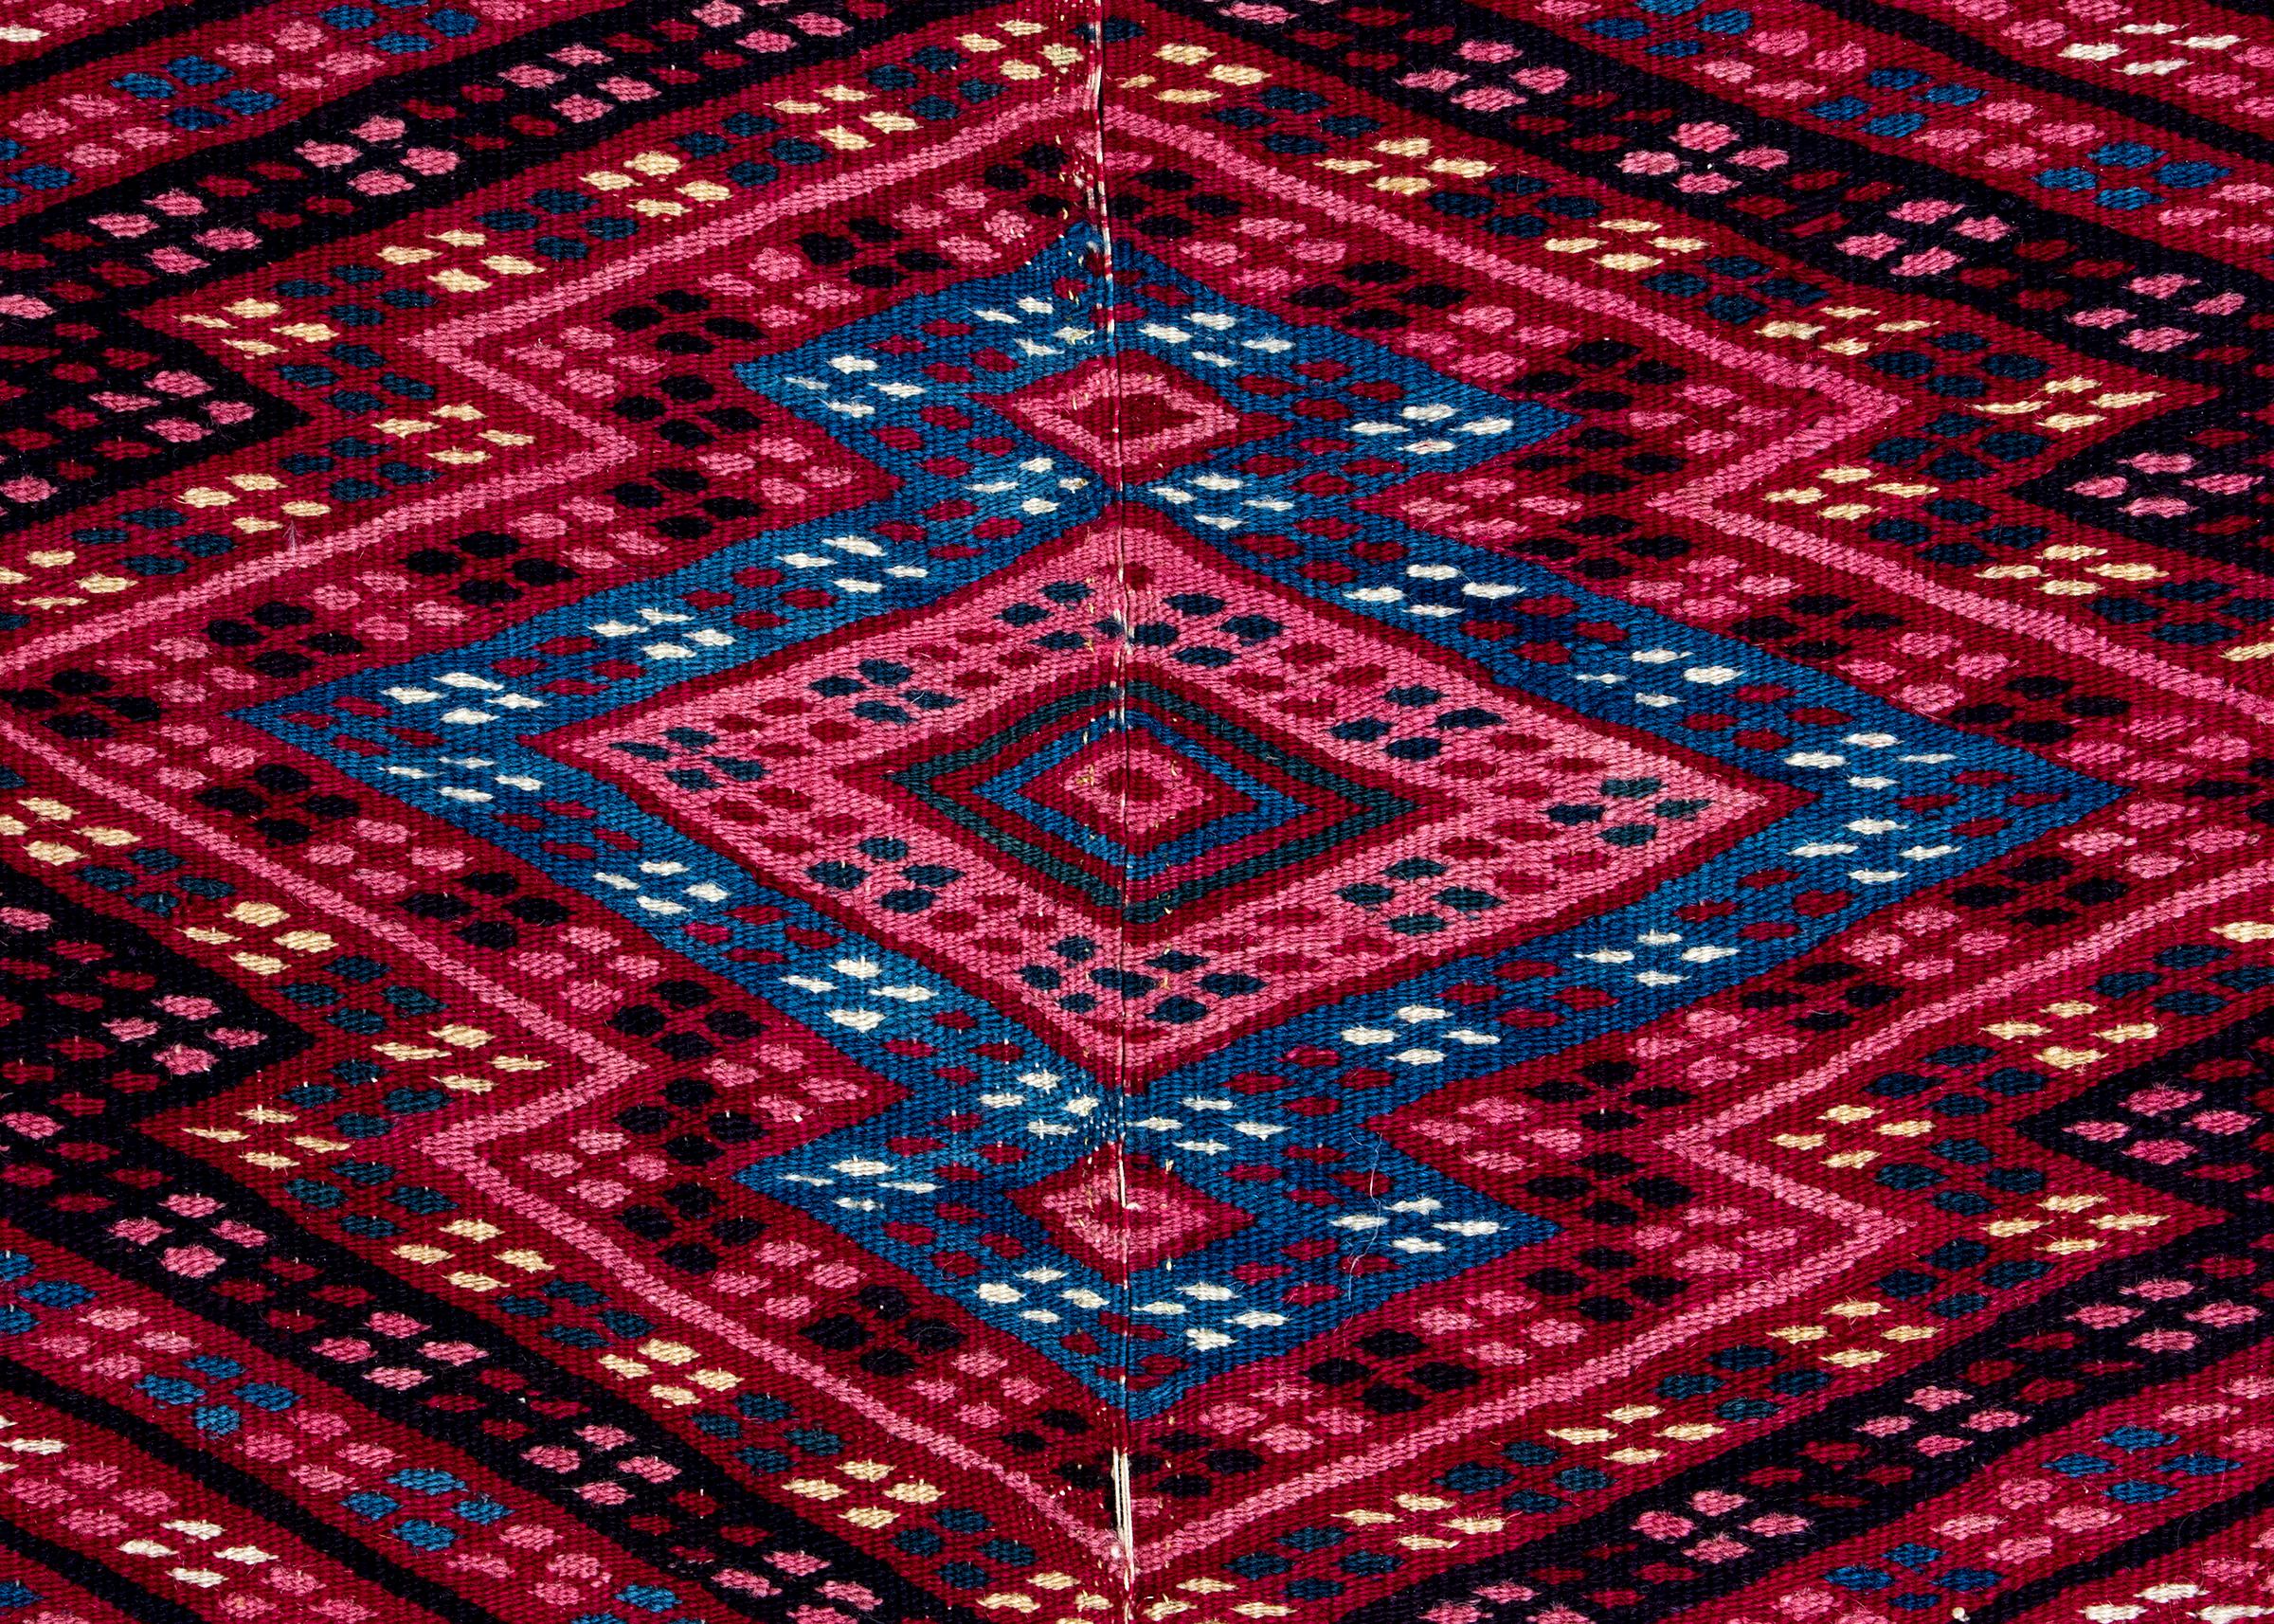 Mesoamerikanisches Saltillo-Serape-Übergangstextil von 1850 aus Wolle mit natürlichen Farbstoffen in Rot, Rosa, Blau, Weiß und Schwarz. Die Außenmaße des sicher montierten Bildes betragen 97 x 48 Zoll.

Die Weberei ist sauber und in sehr gutem